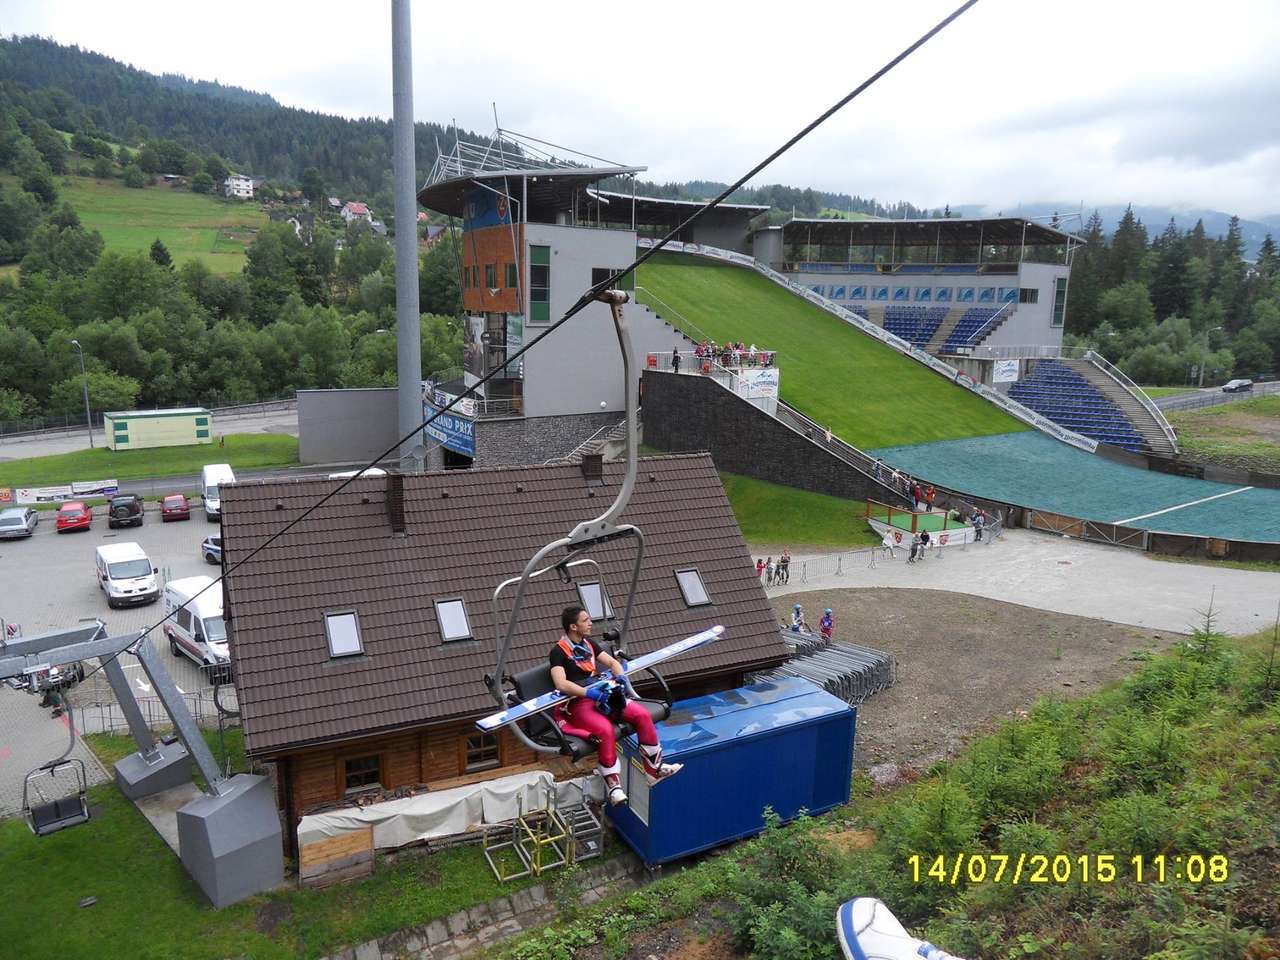 Extrait sur le saut à ski à Wisła puzzle en ligne